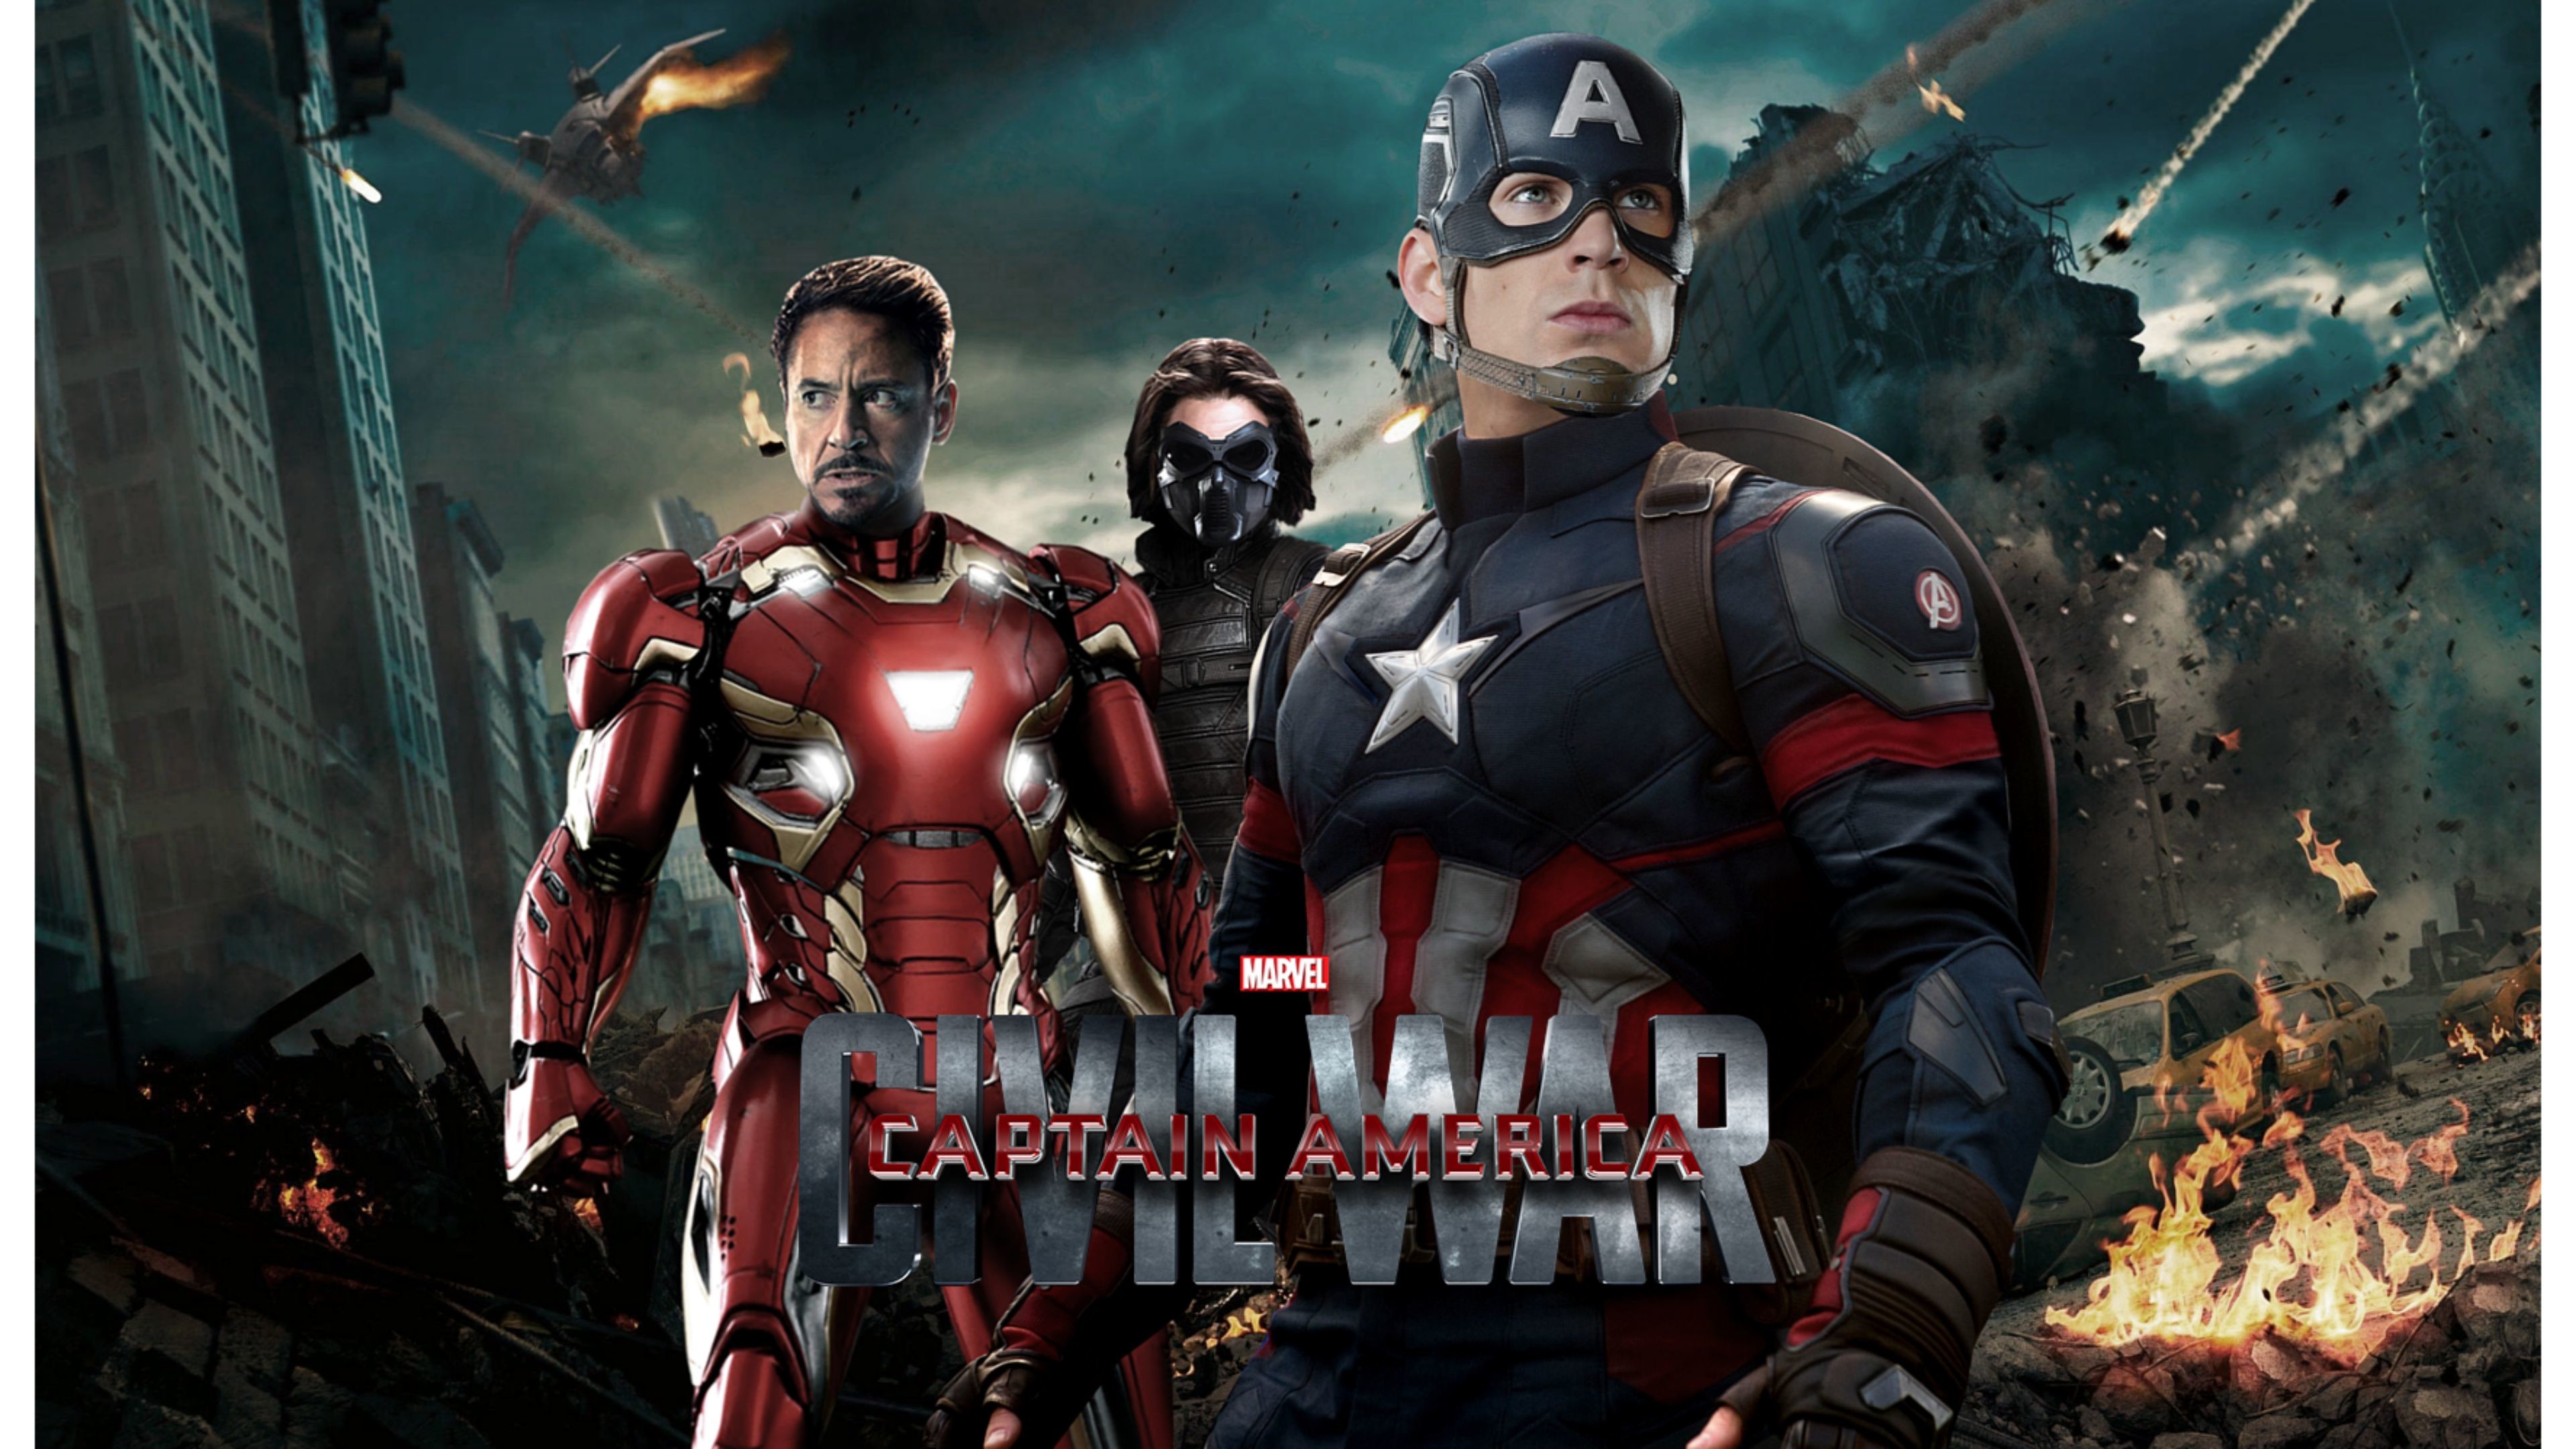 Captain America Civil War HD Wallpapers Backgrounds | HD Wallpapers |  Pinterest | Hd wallpaper, Wallpaper backgrounds and Wallpaper